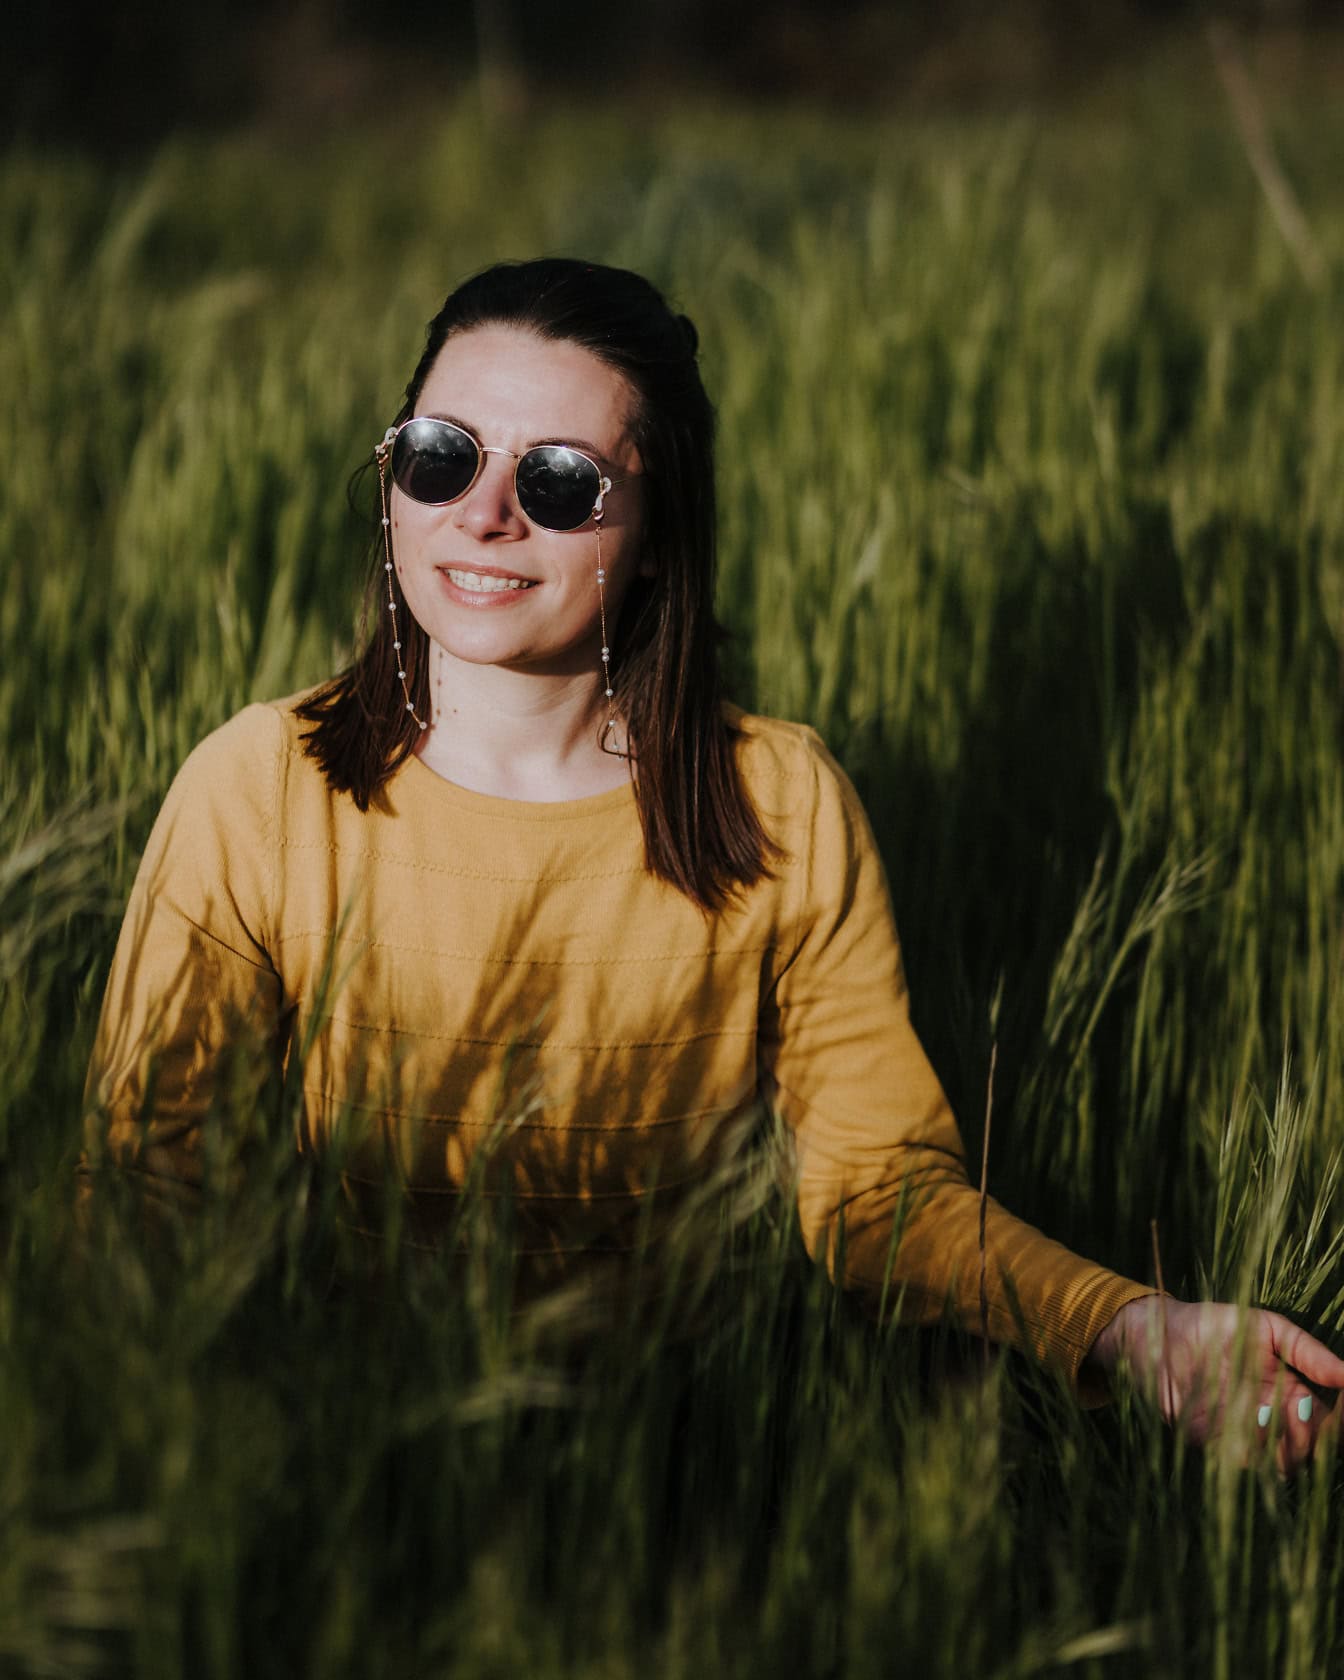 키 큰 풀밭에서 존 레논 스타일의 선글라스를 착용 한 아름 다운 미소 짓는 여자의 초상화